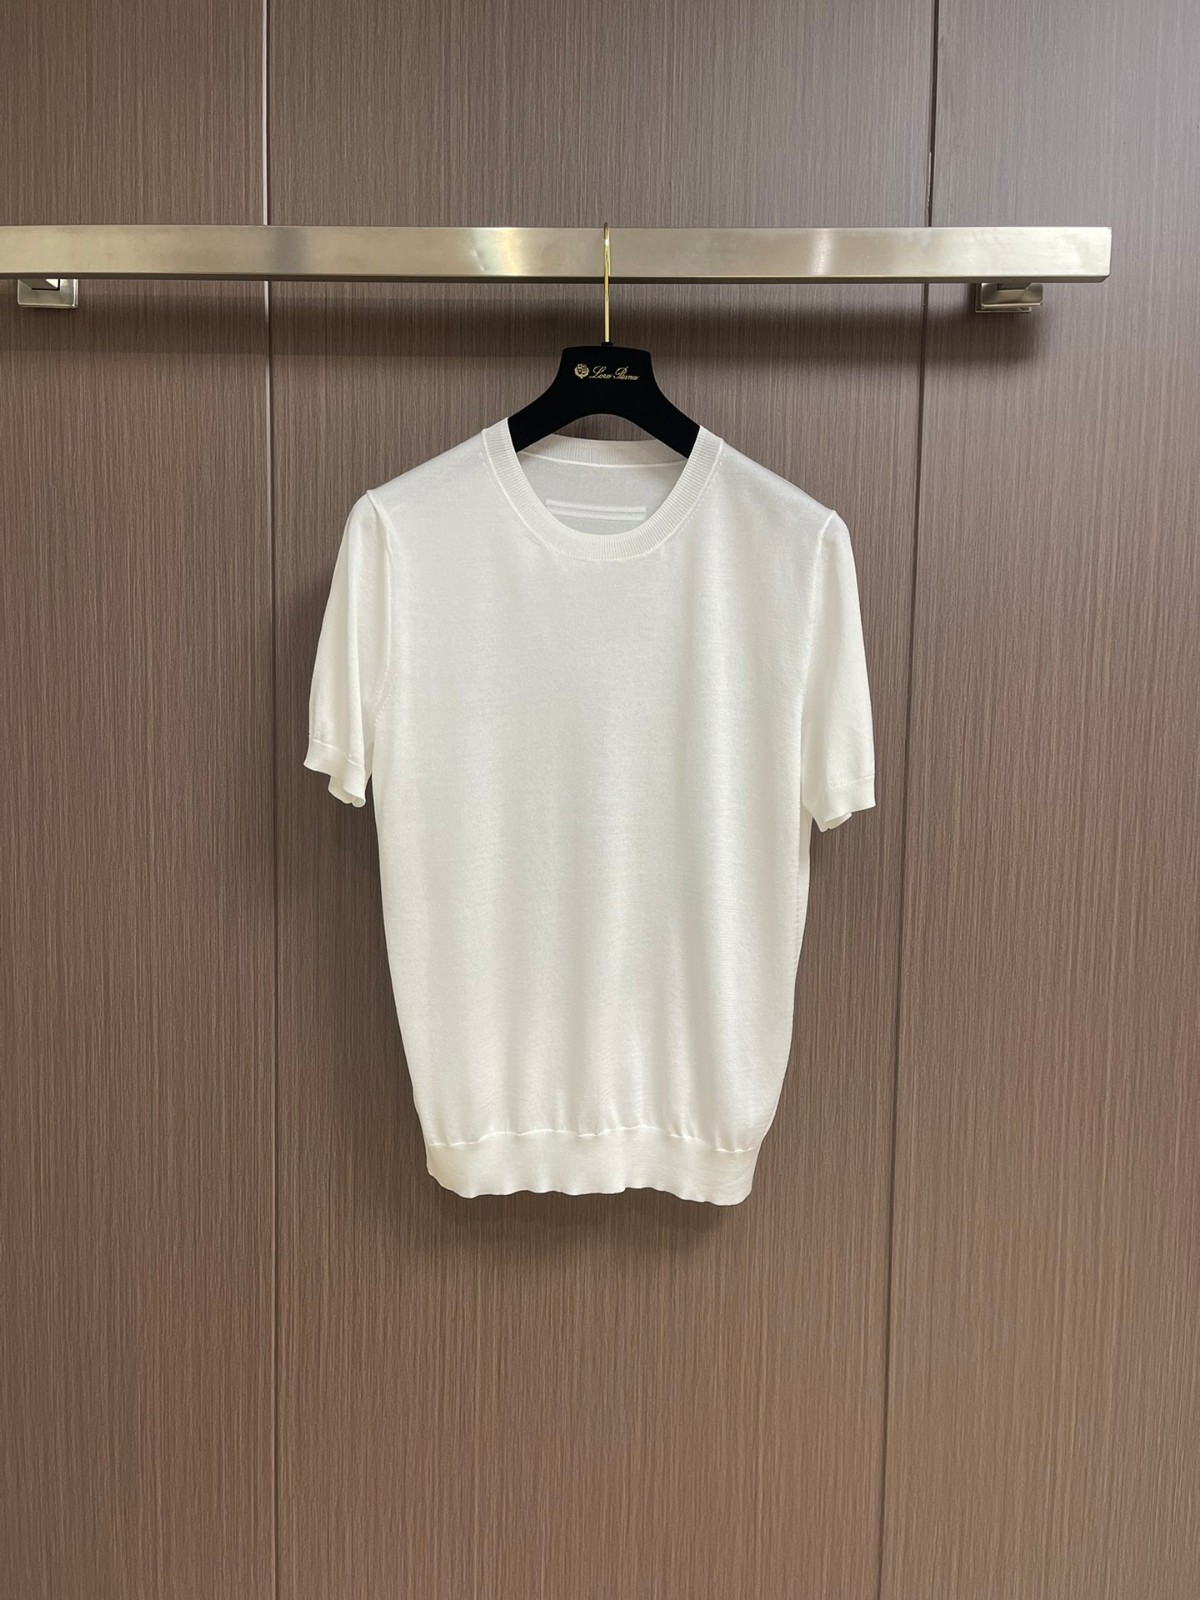 シンプル 快適 ニット 半袖Tシャツ エルメネジルド・ゼニア ニット コピー ホワイト